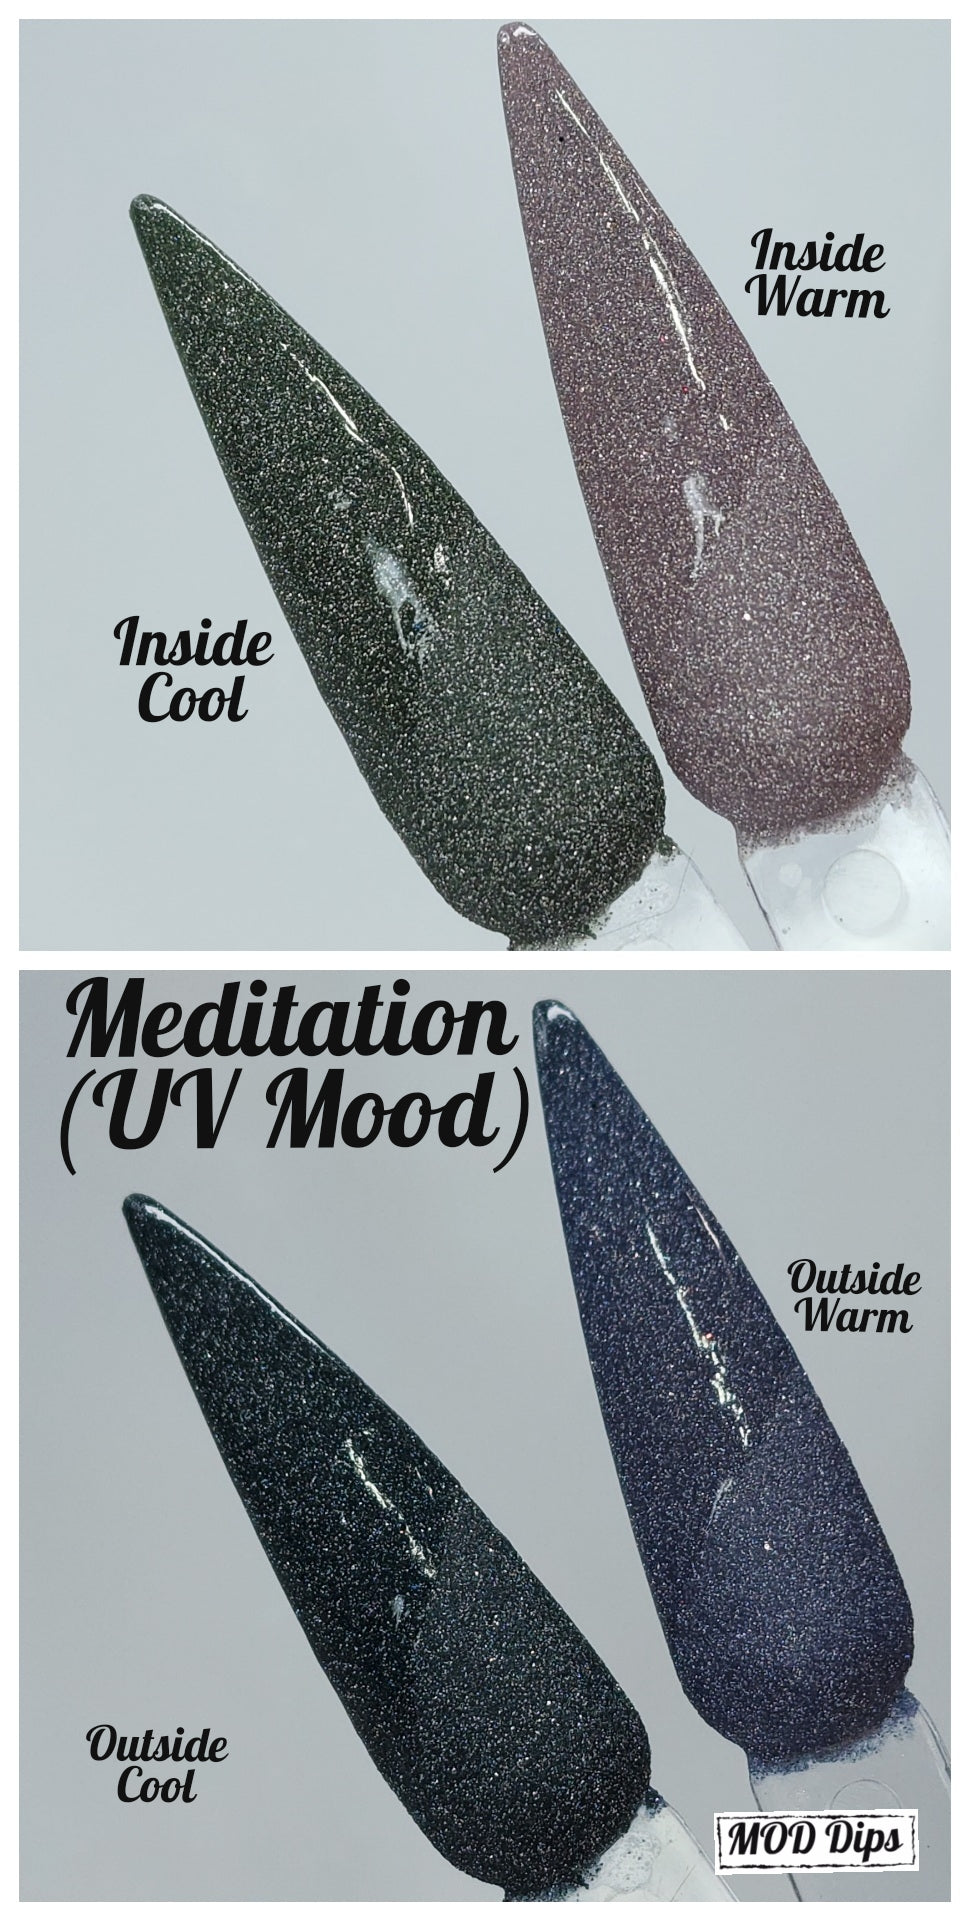 Mediation (UV Mood)